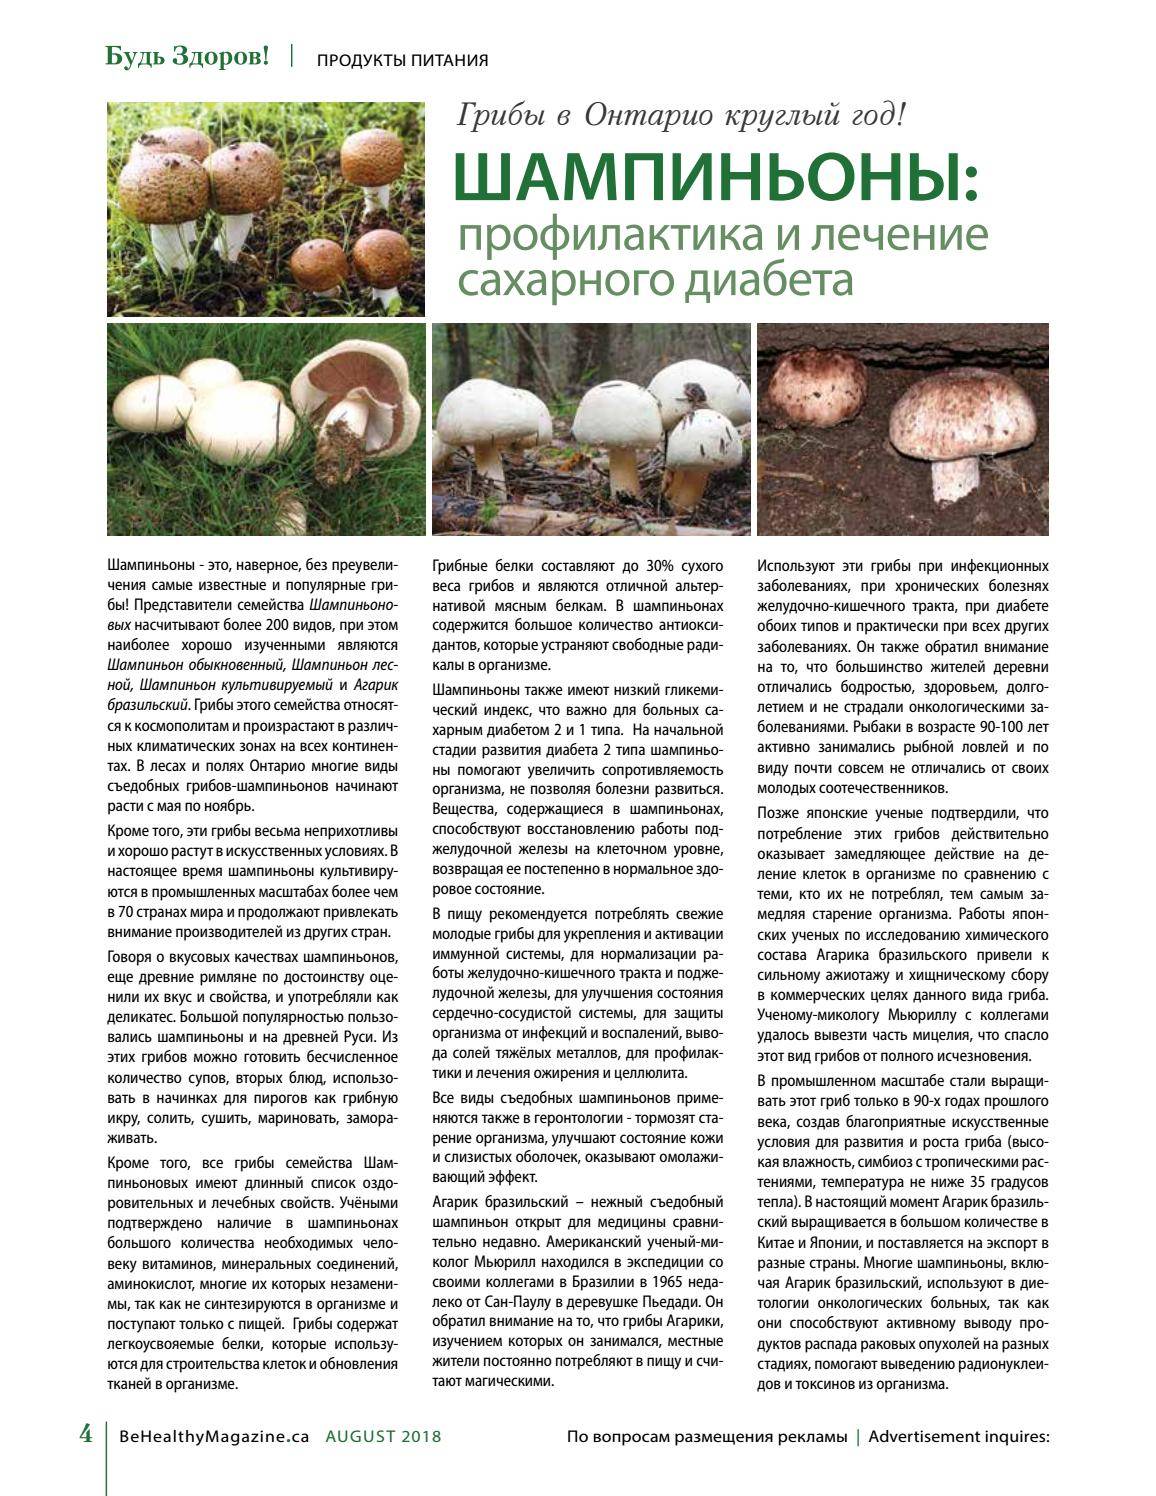 Можно ли детям грибы: с какого возраста и какие грибы давать